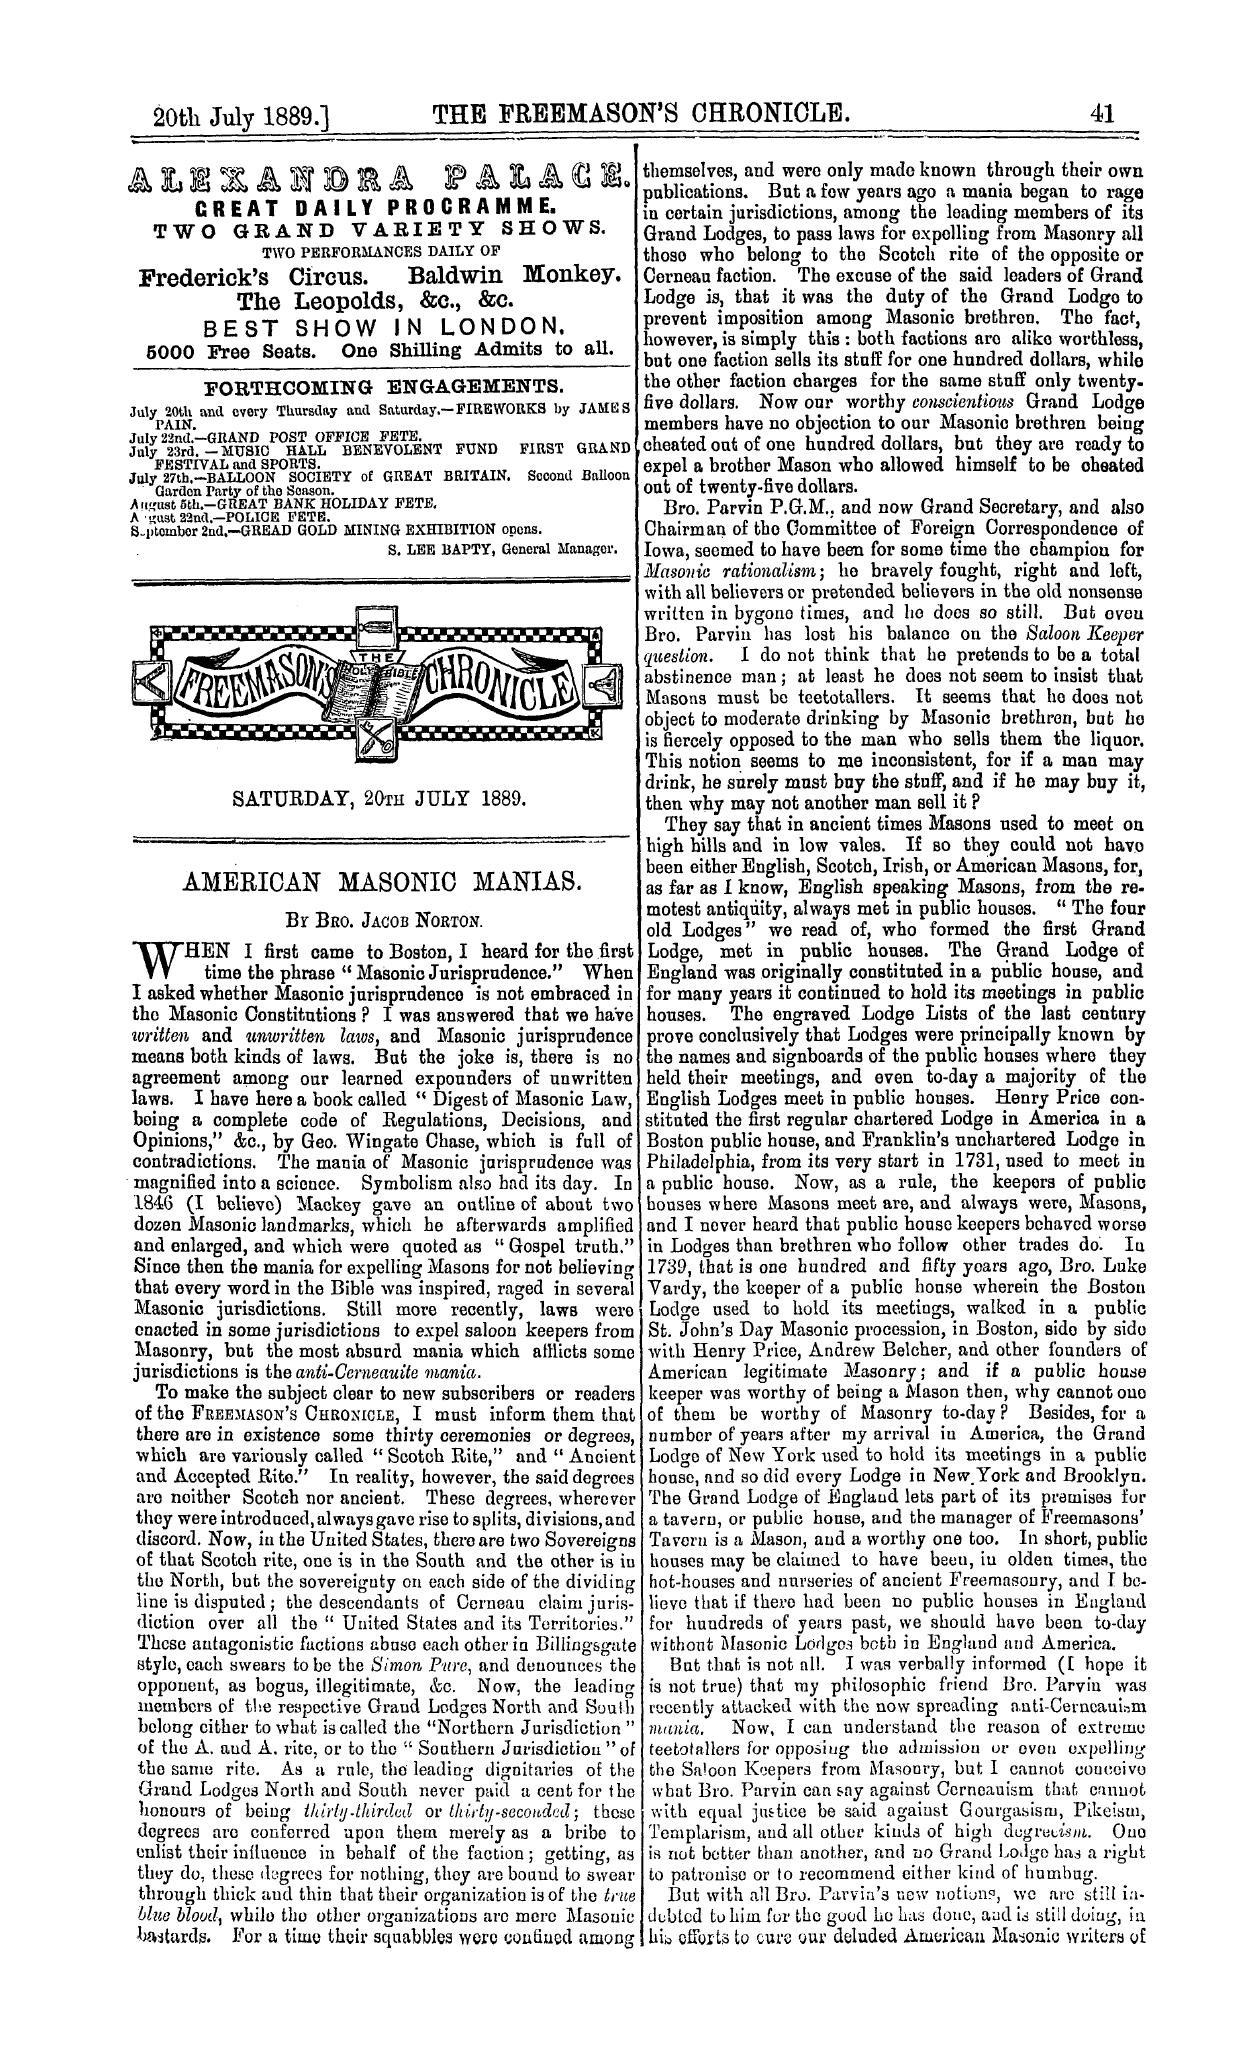 The Freemason's Chronicle: 1889-07-20 - Ar00904